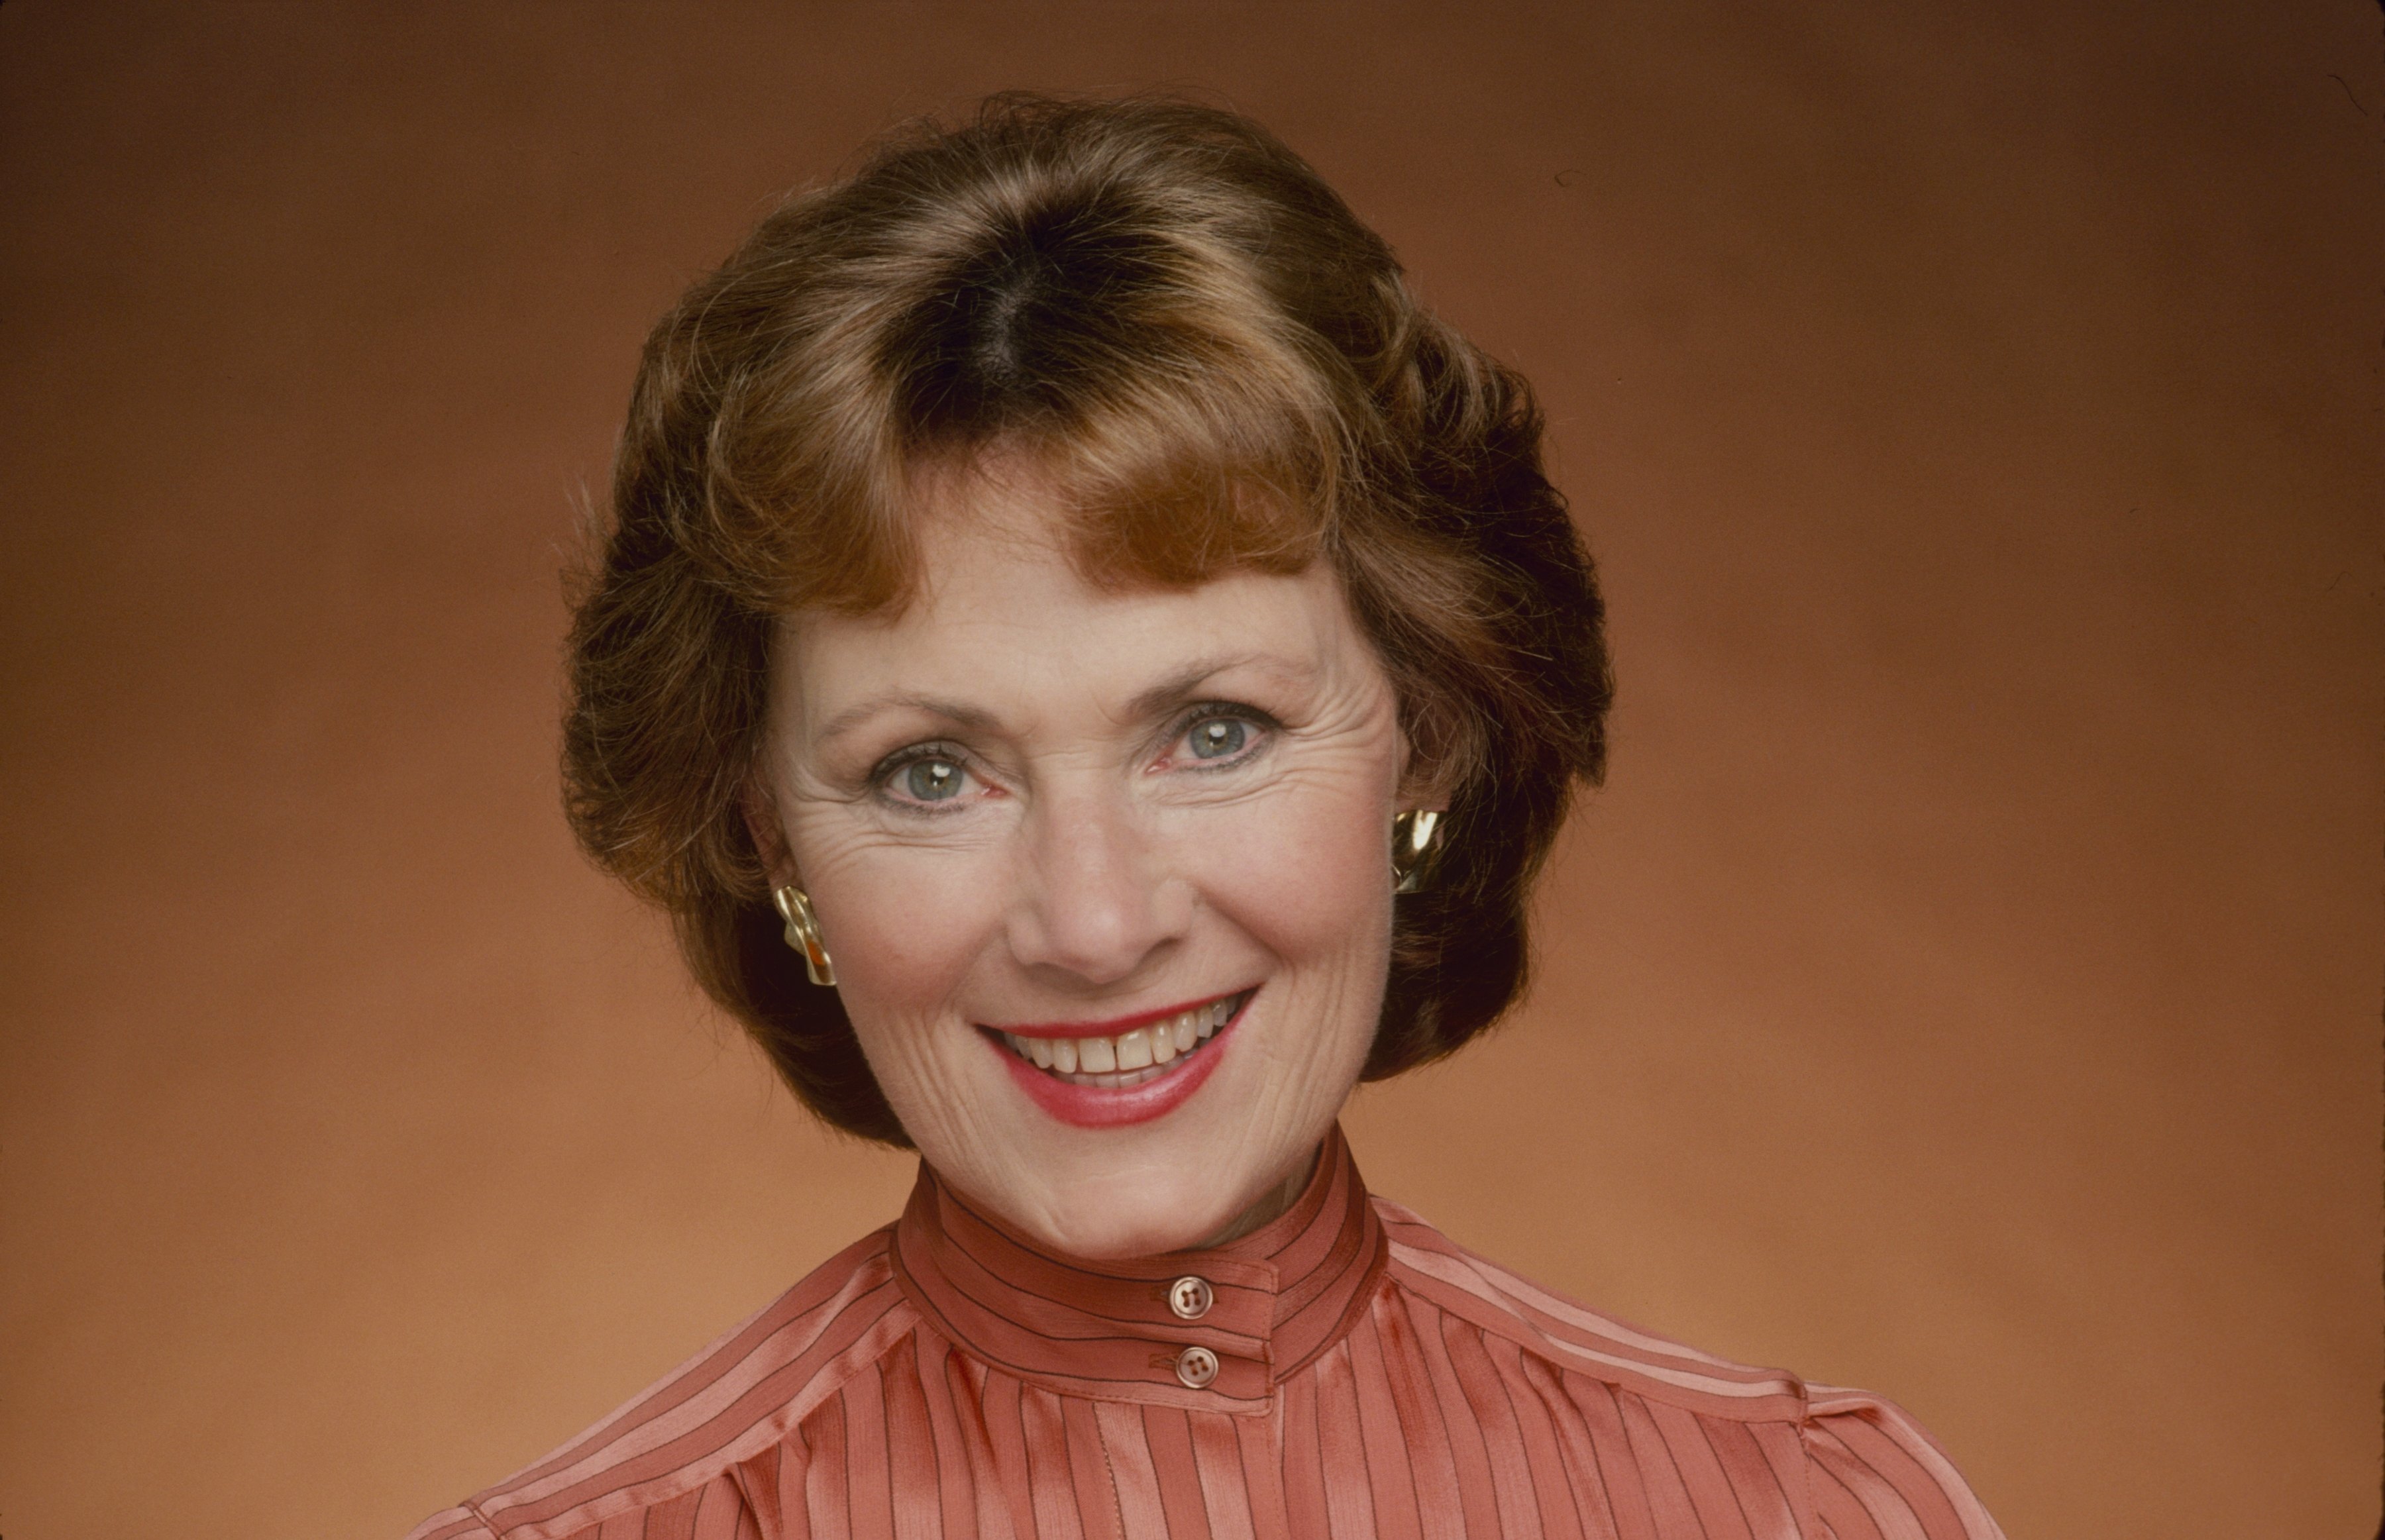 Marion Ross dans le rôle de "Marion Cunningham" dans "Les jours heureux" en août 1983 | Source : Getty Images